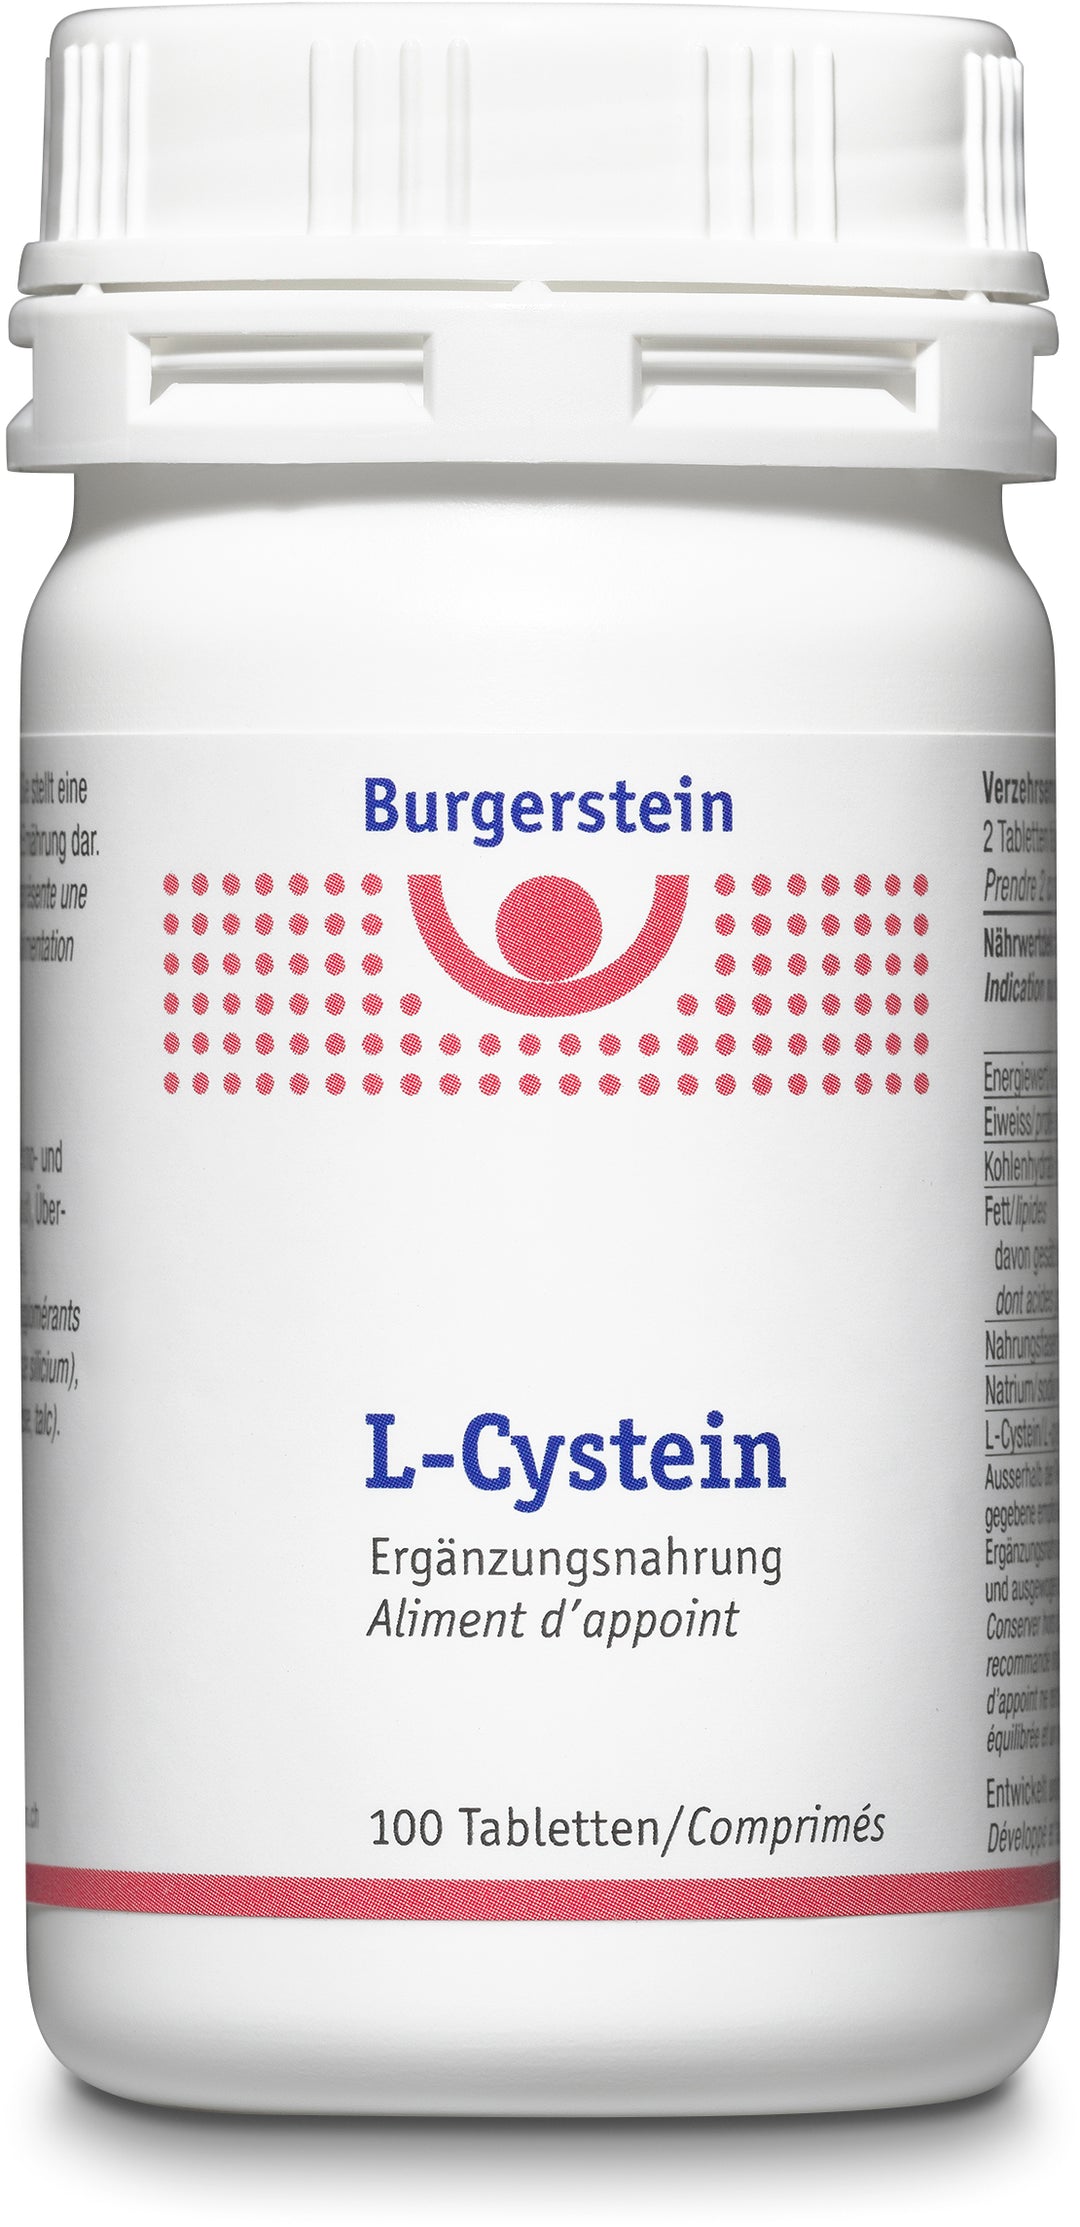 BURGERSTEIN L-Cystein comprimés bte 100 pièces